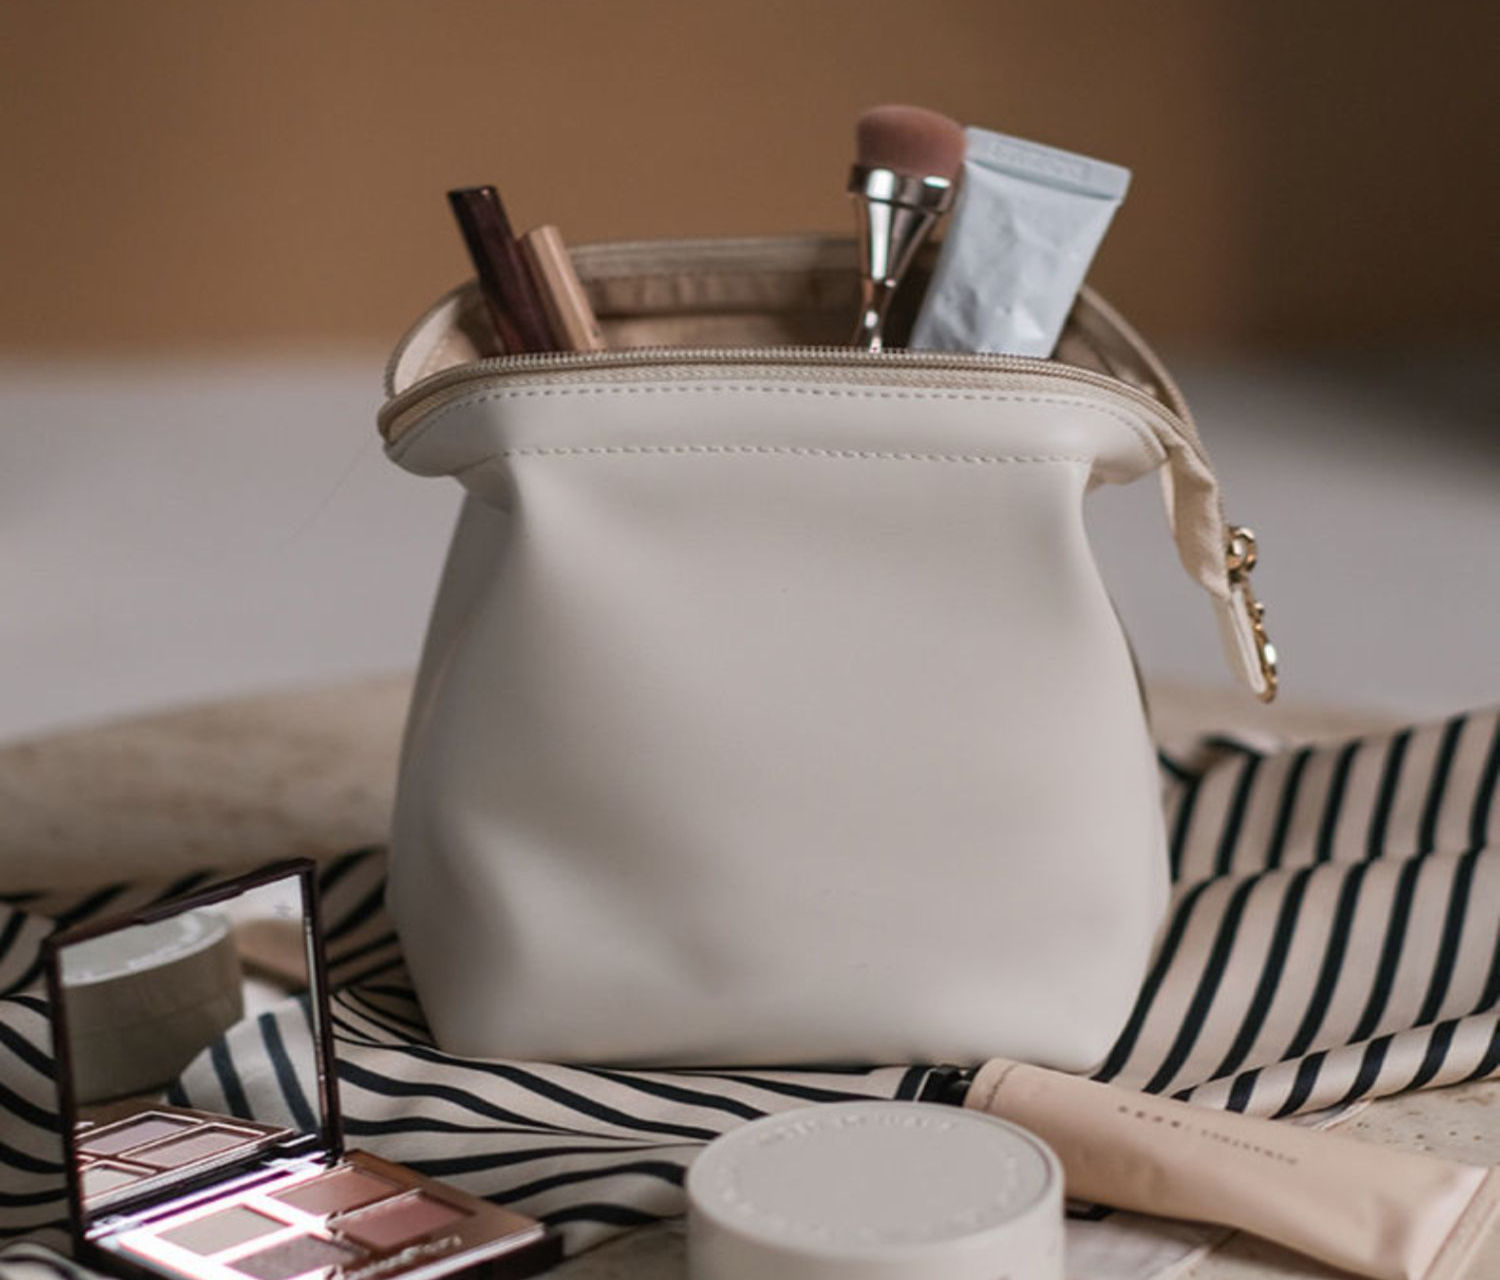 personalised makeup bag image detail